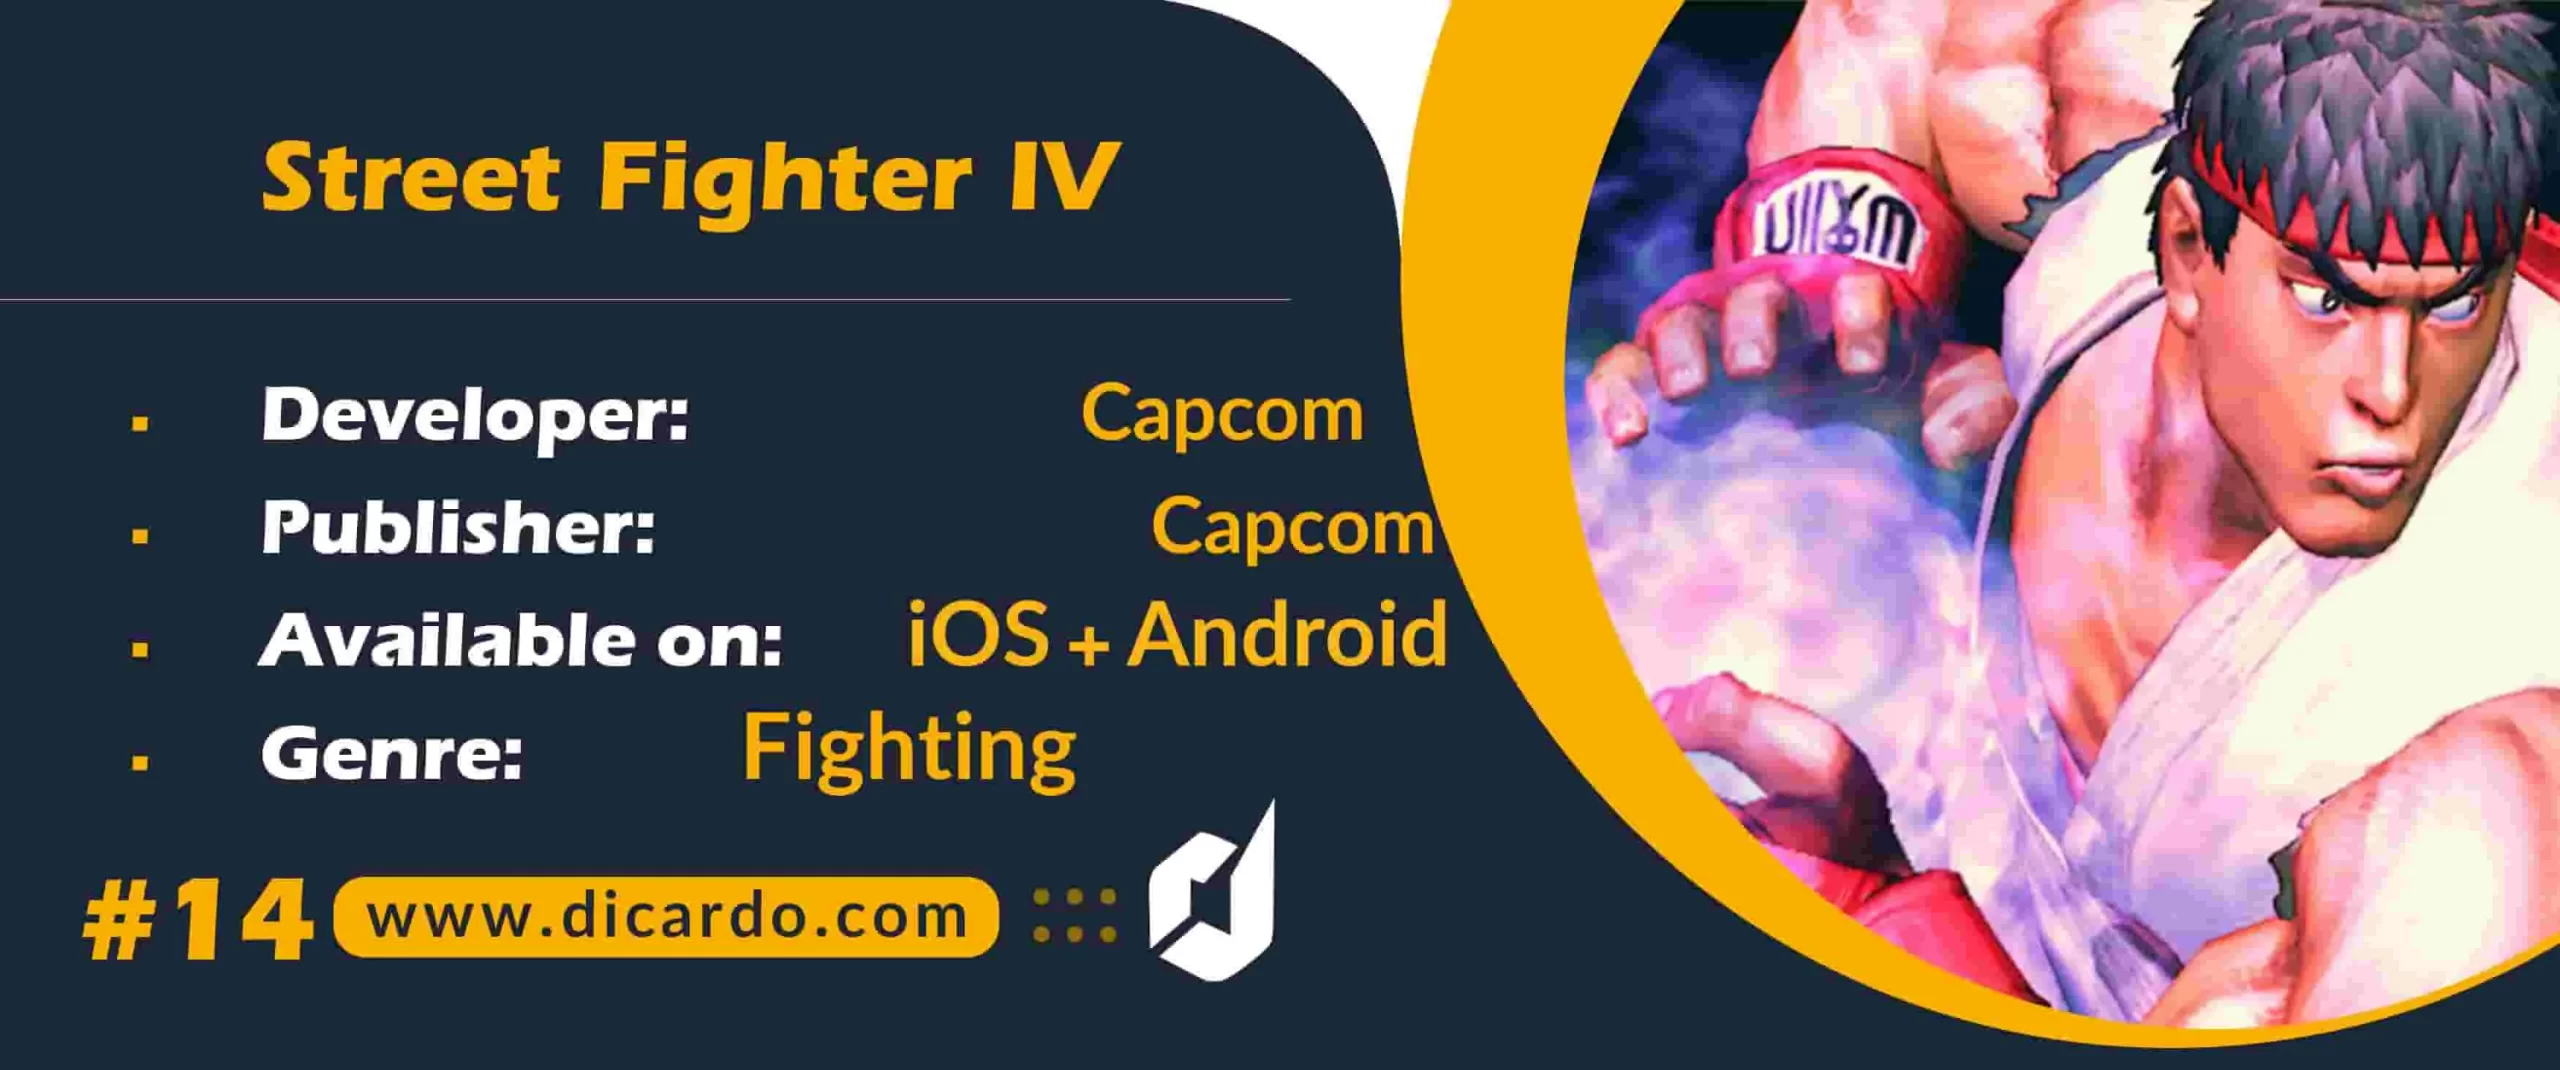 #14 استریت فایتر 4 Street Fighter IV از بهترین بازیهای جنگی با 32 مبارز منحصربه فرد